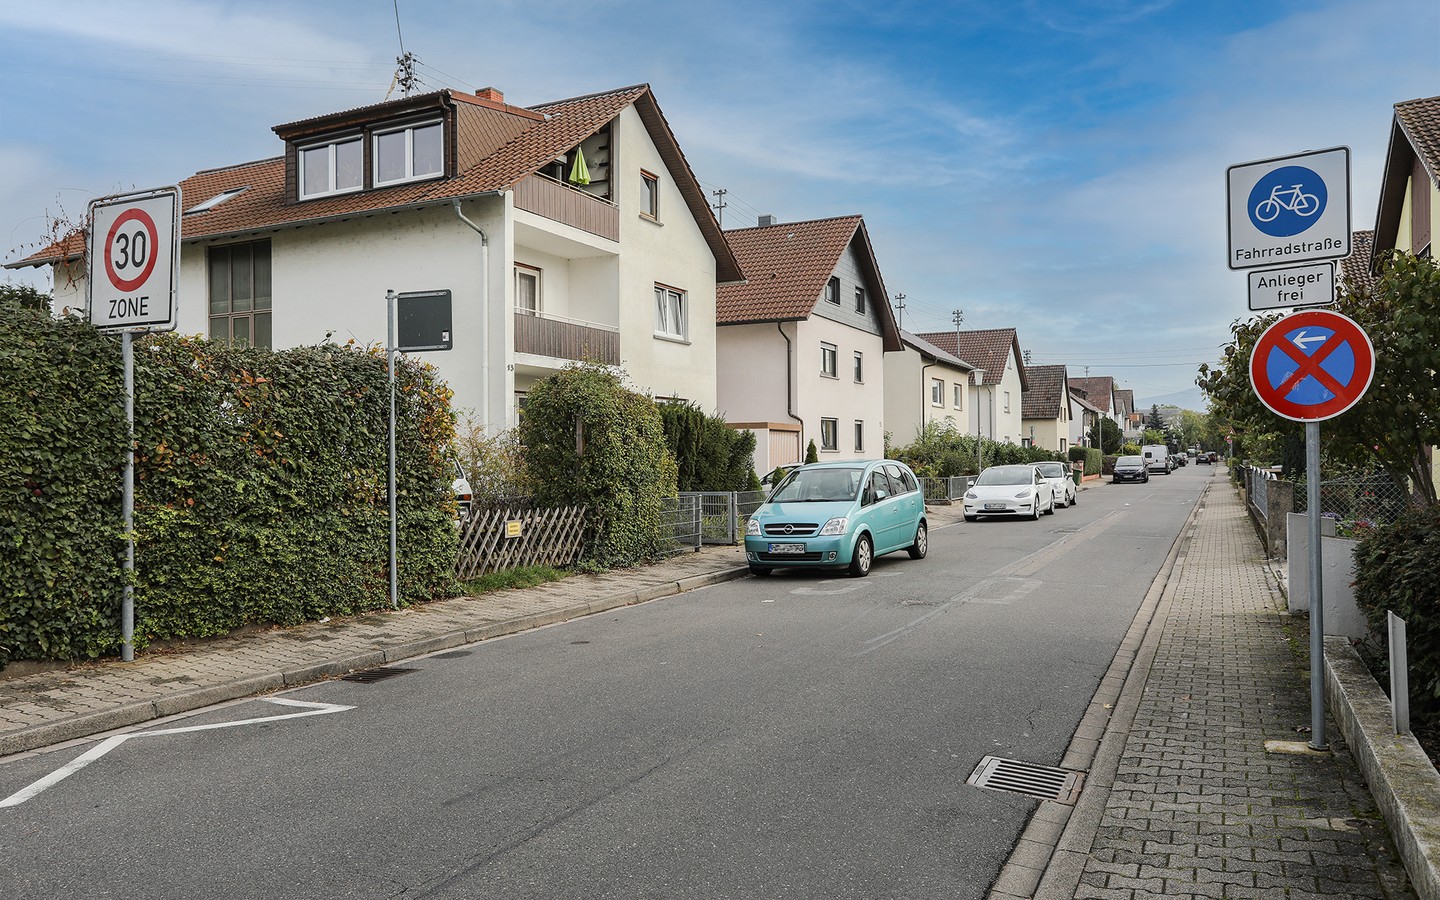 Straßenzug - Eppelheim: MFH auf großem Erbpachtgrundstück in 
familienfreundlicher Wohnlage zur flexiblen Nutzung